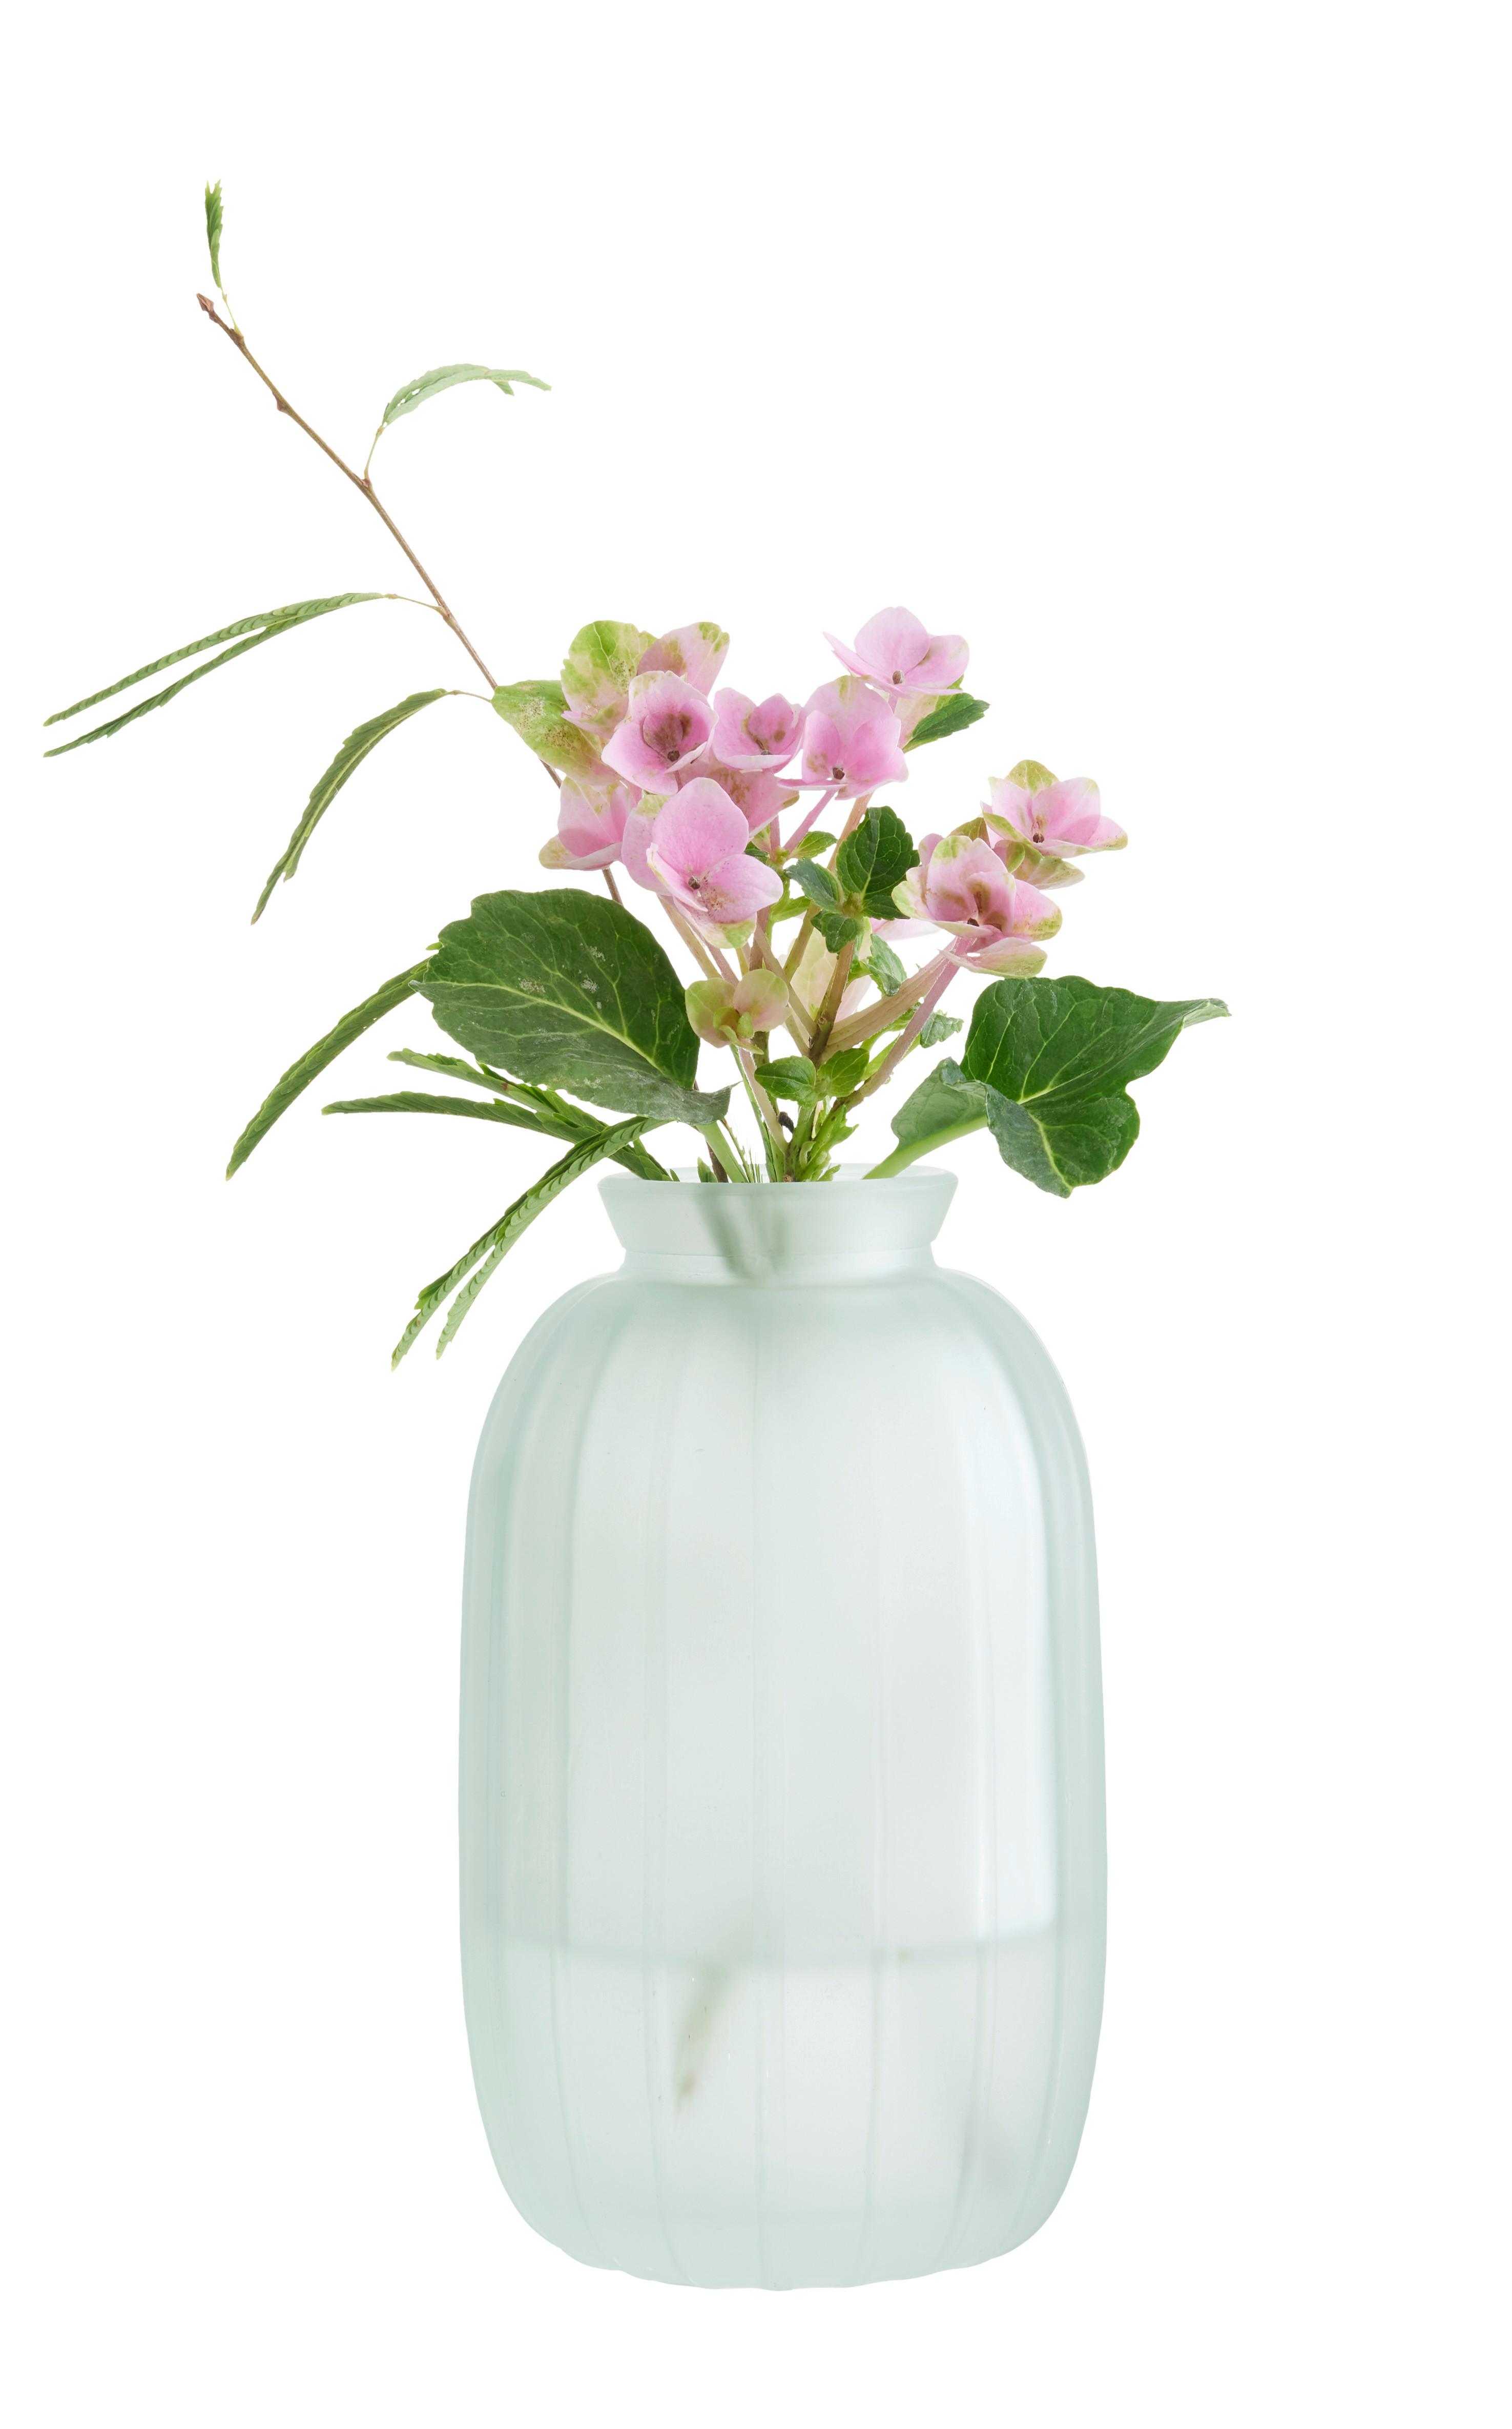 Váza Jil I - šalviovozelená, Konvenčný, sklo (7/11cm) - Modern Living